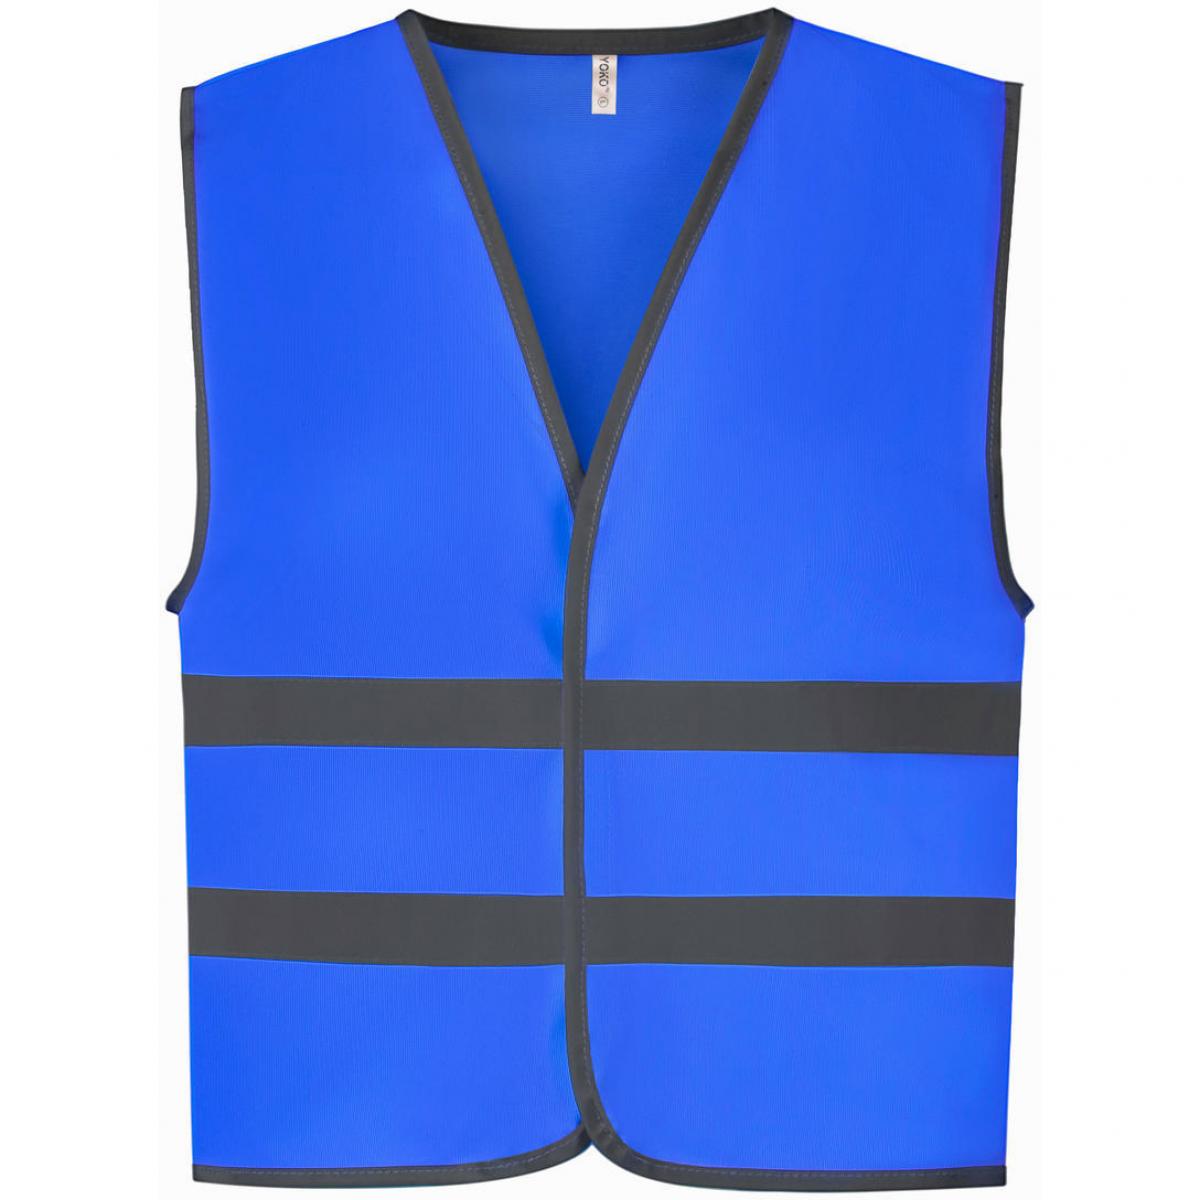 Hersteller: YOKO Herstellernummer: HVW102CH Artikelbezeichnung: Kids Fluo Reflective Border Waistcoat - Sicherheitsweste Farbe: Royal Blue